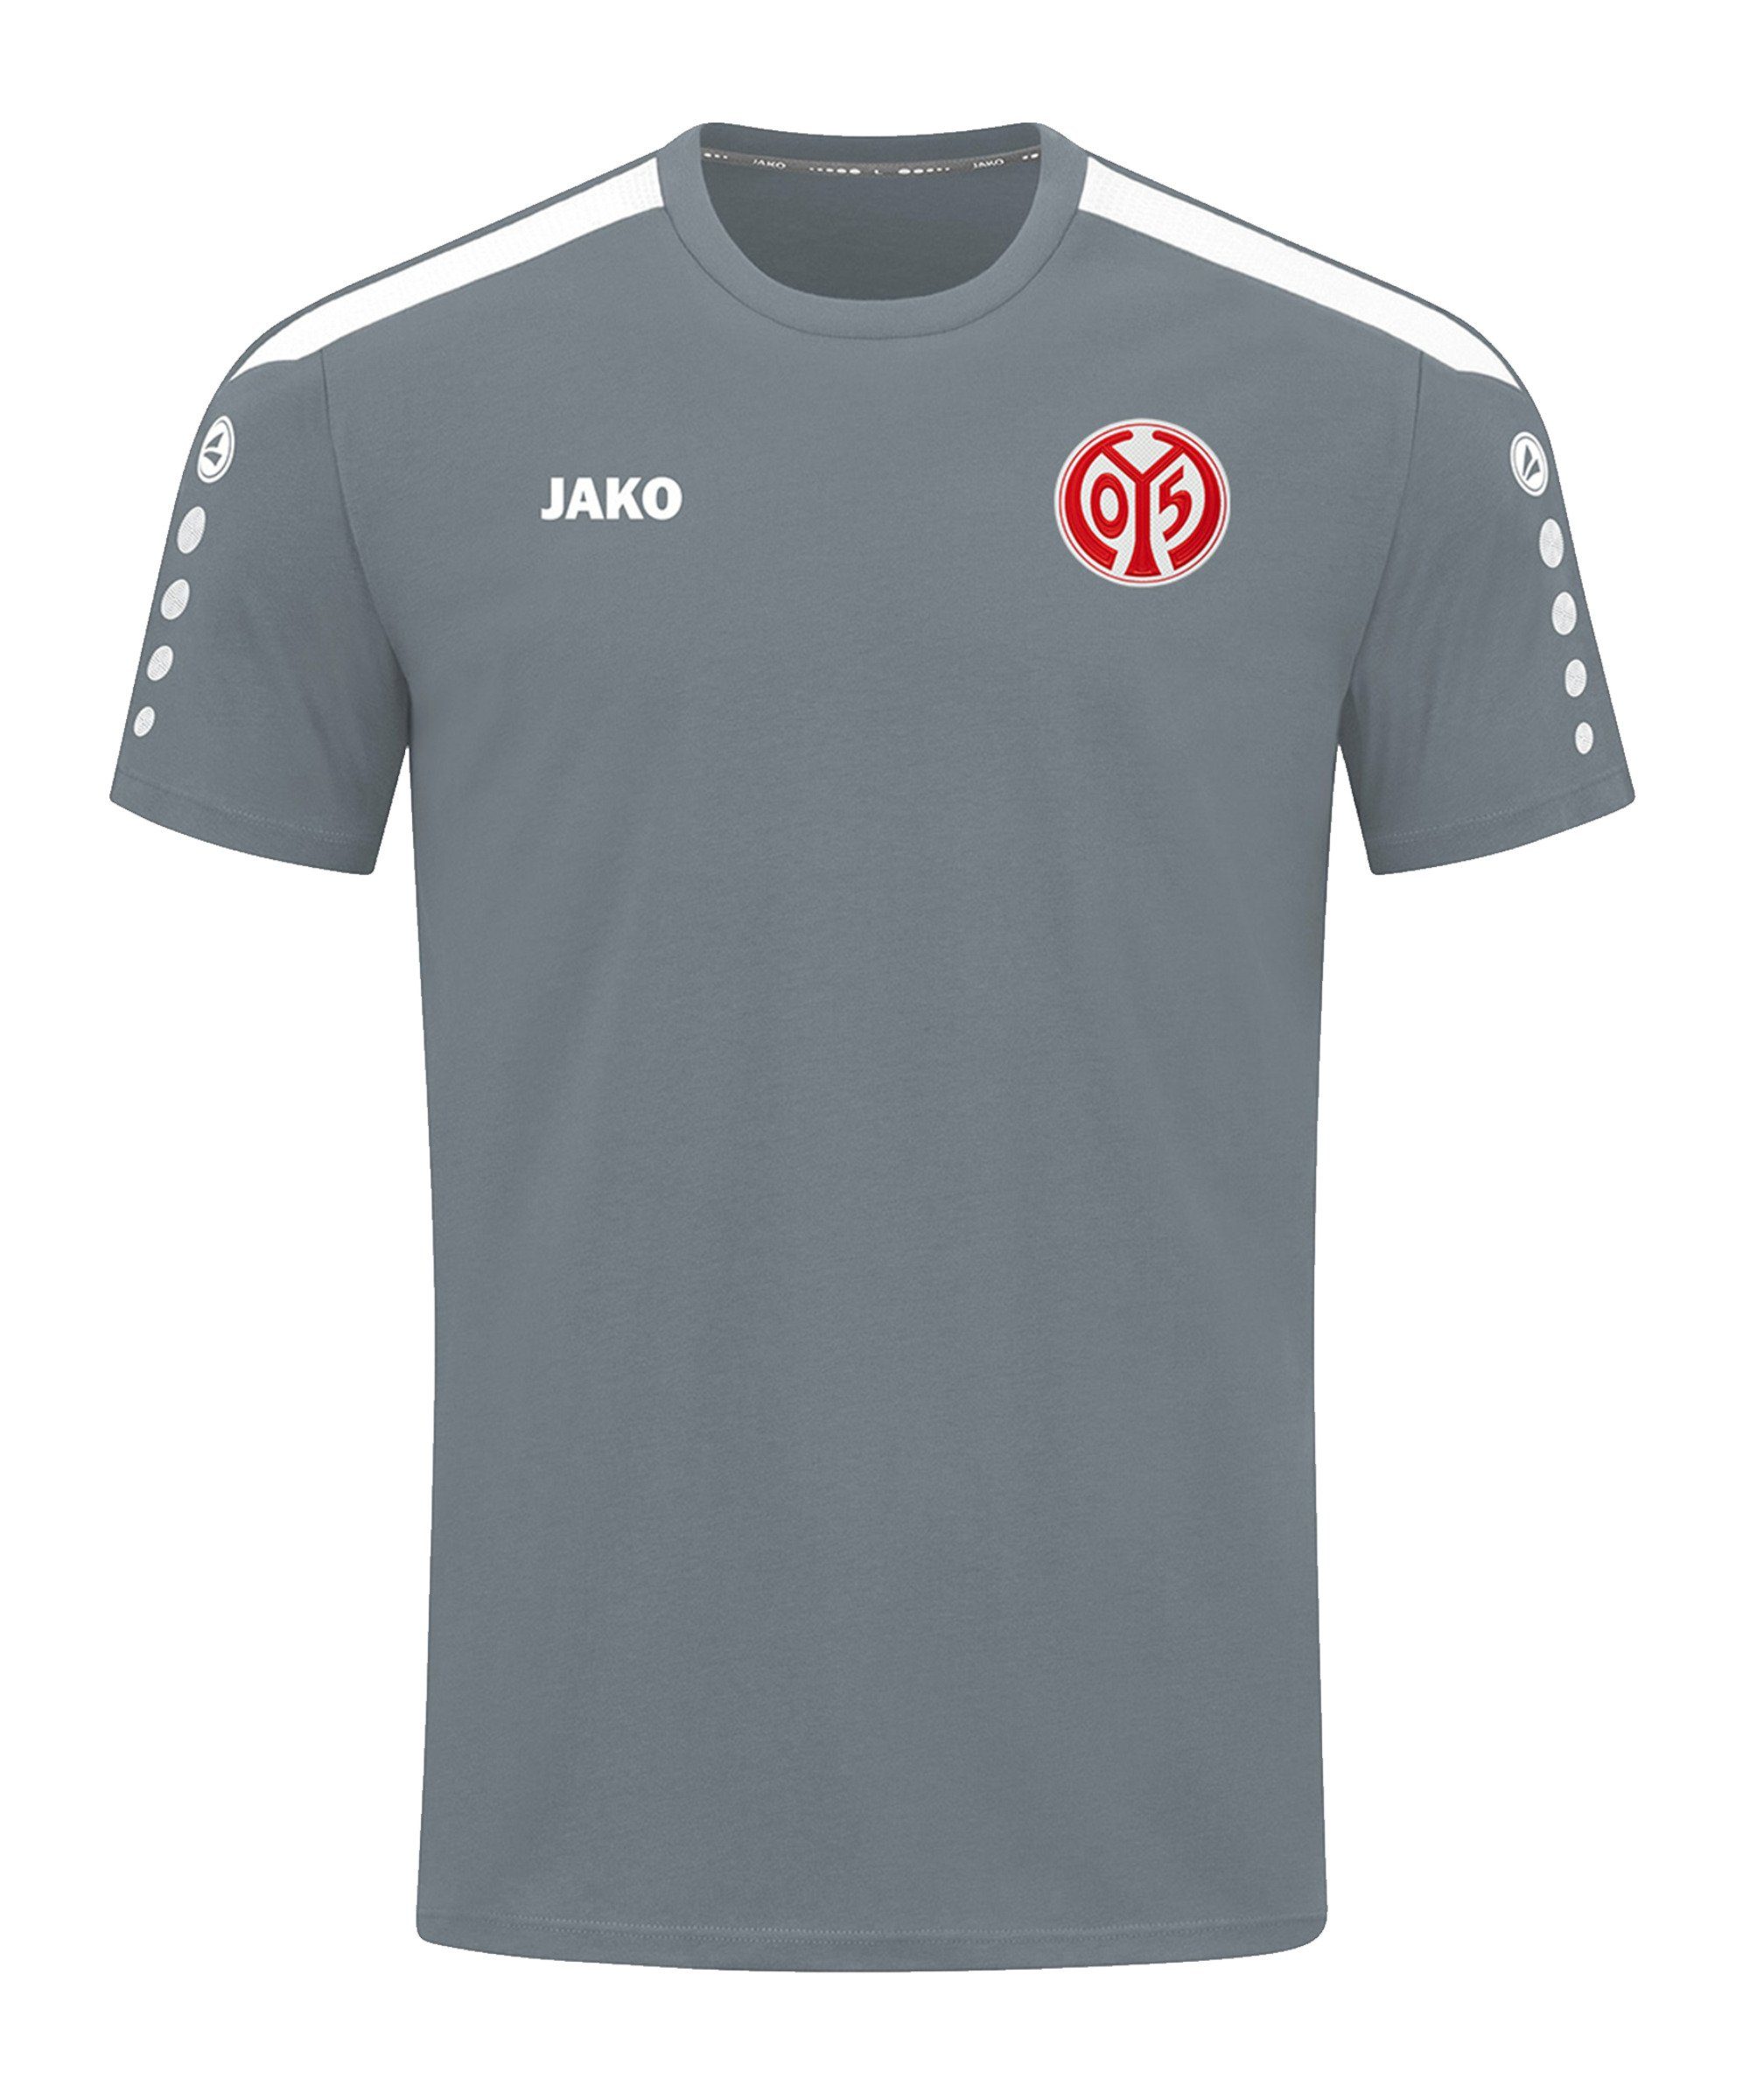 Jako T-Shirt 1. FSV Mainz grau 05 default T-Shirt Power